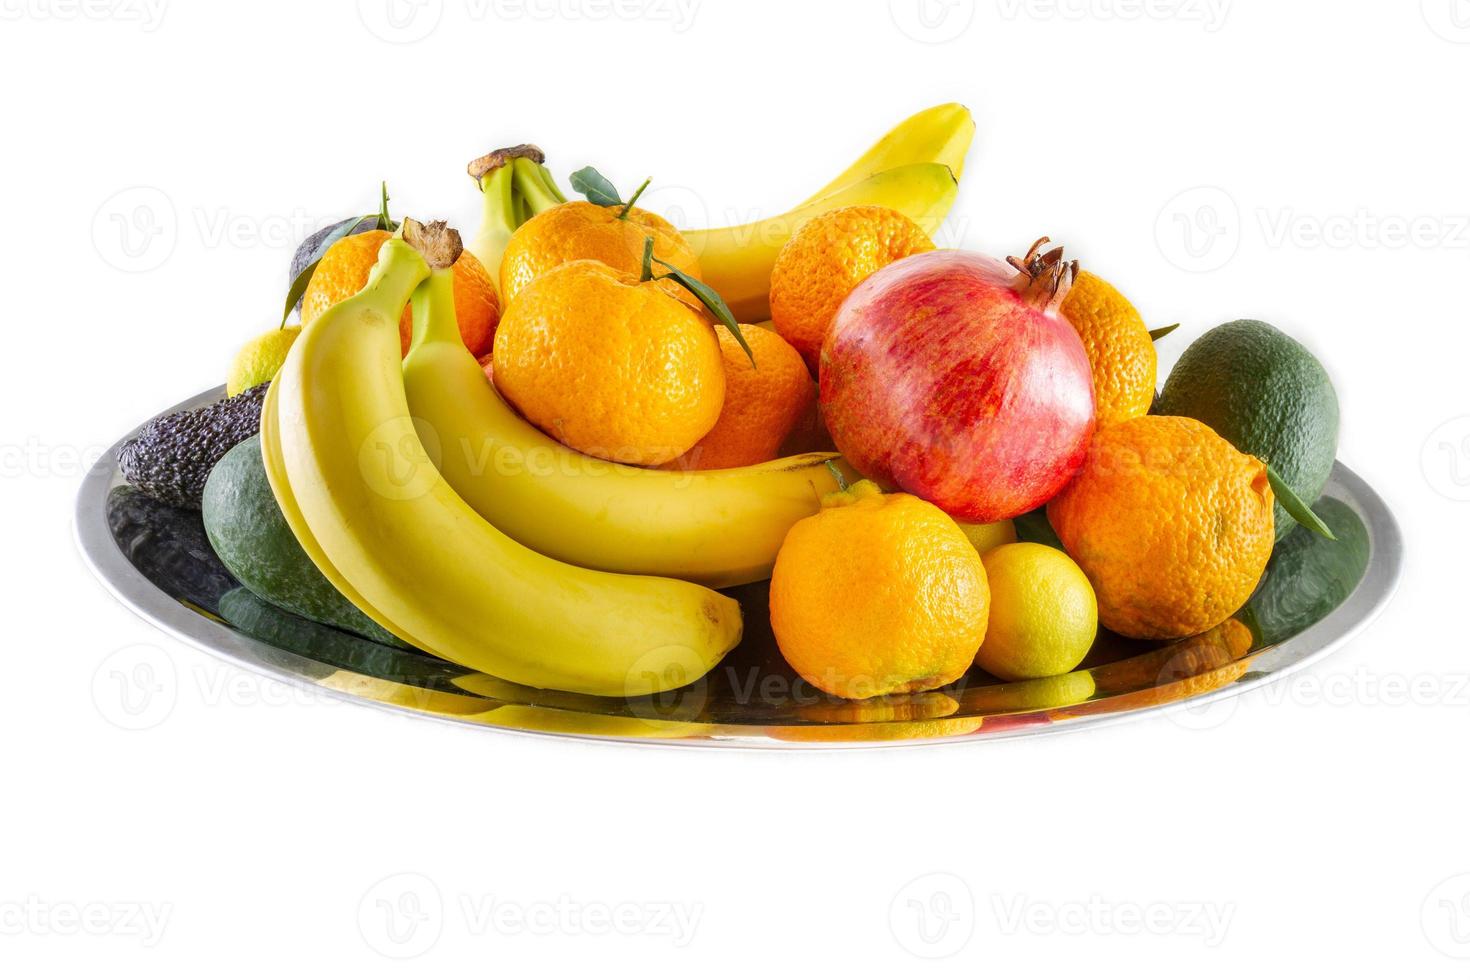 assiette de fruits et légumes assortis de bananes, grenade, citron, mandarine et avocat. photo